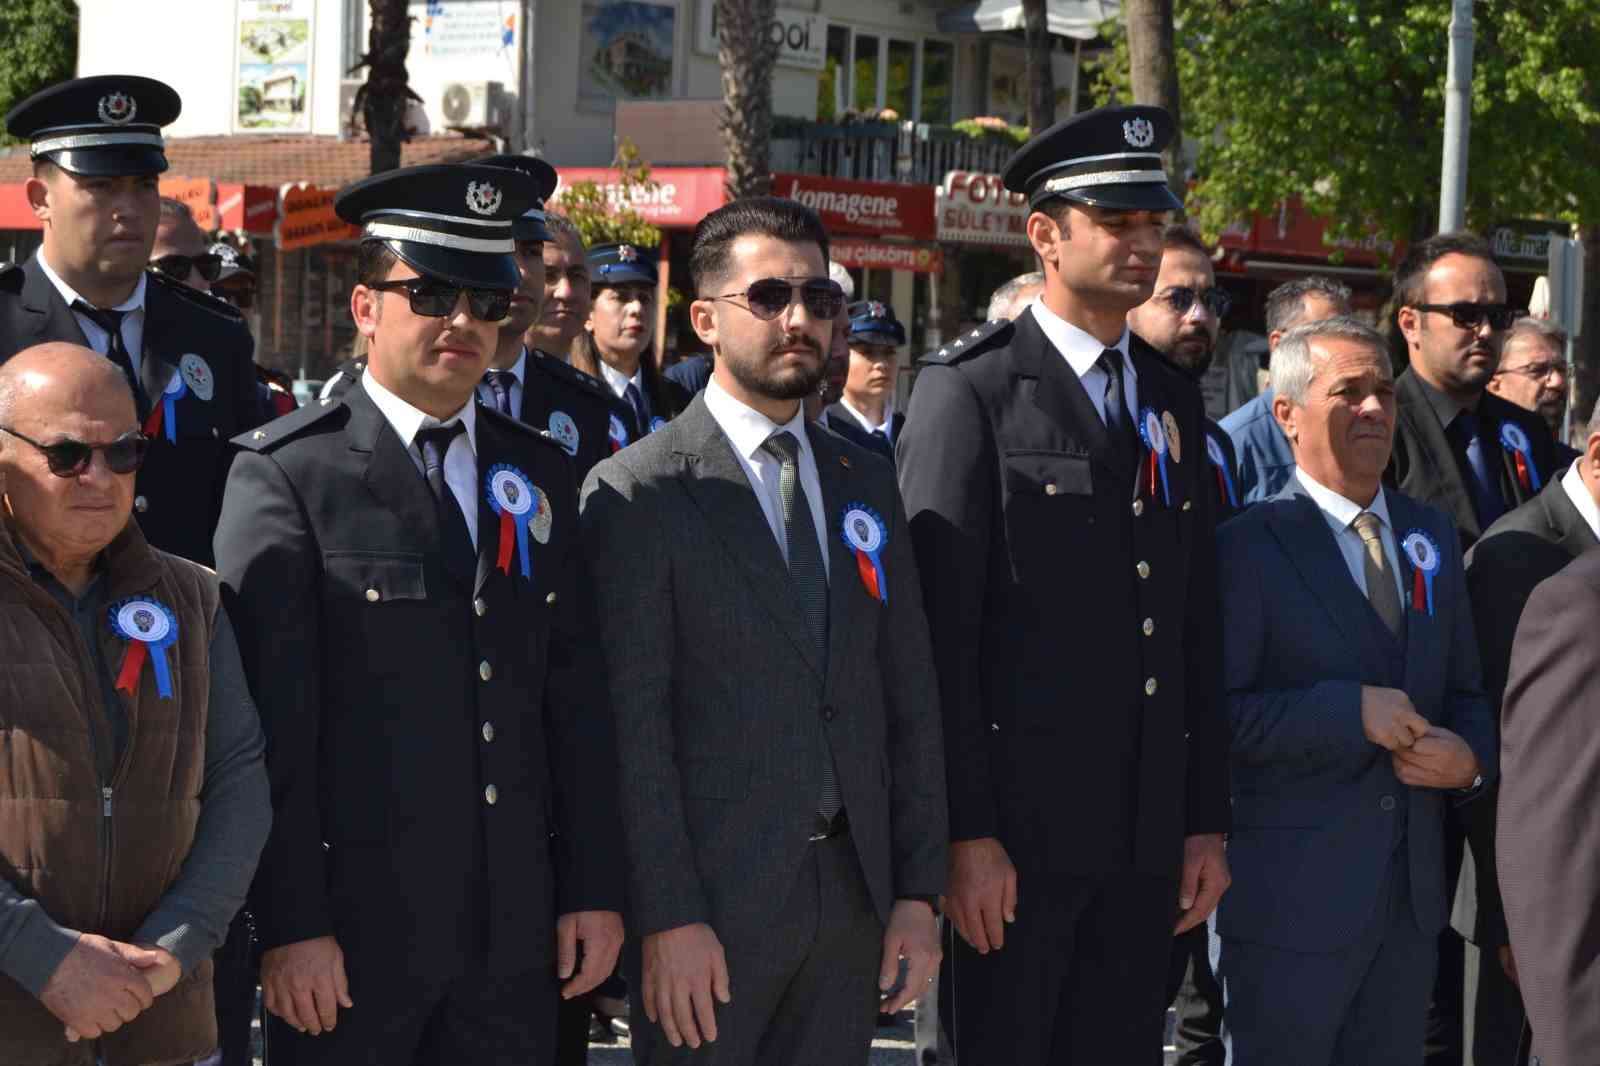 Türk Polis Teşkilatının 179. kuruluş yıldönümü Fethiye’de kutlandı
